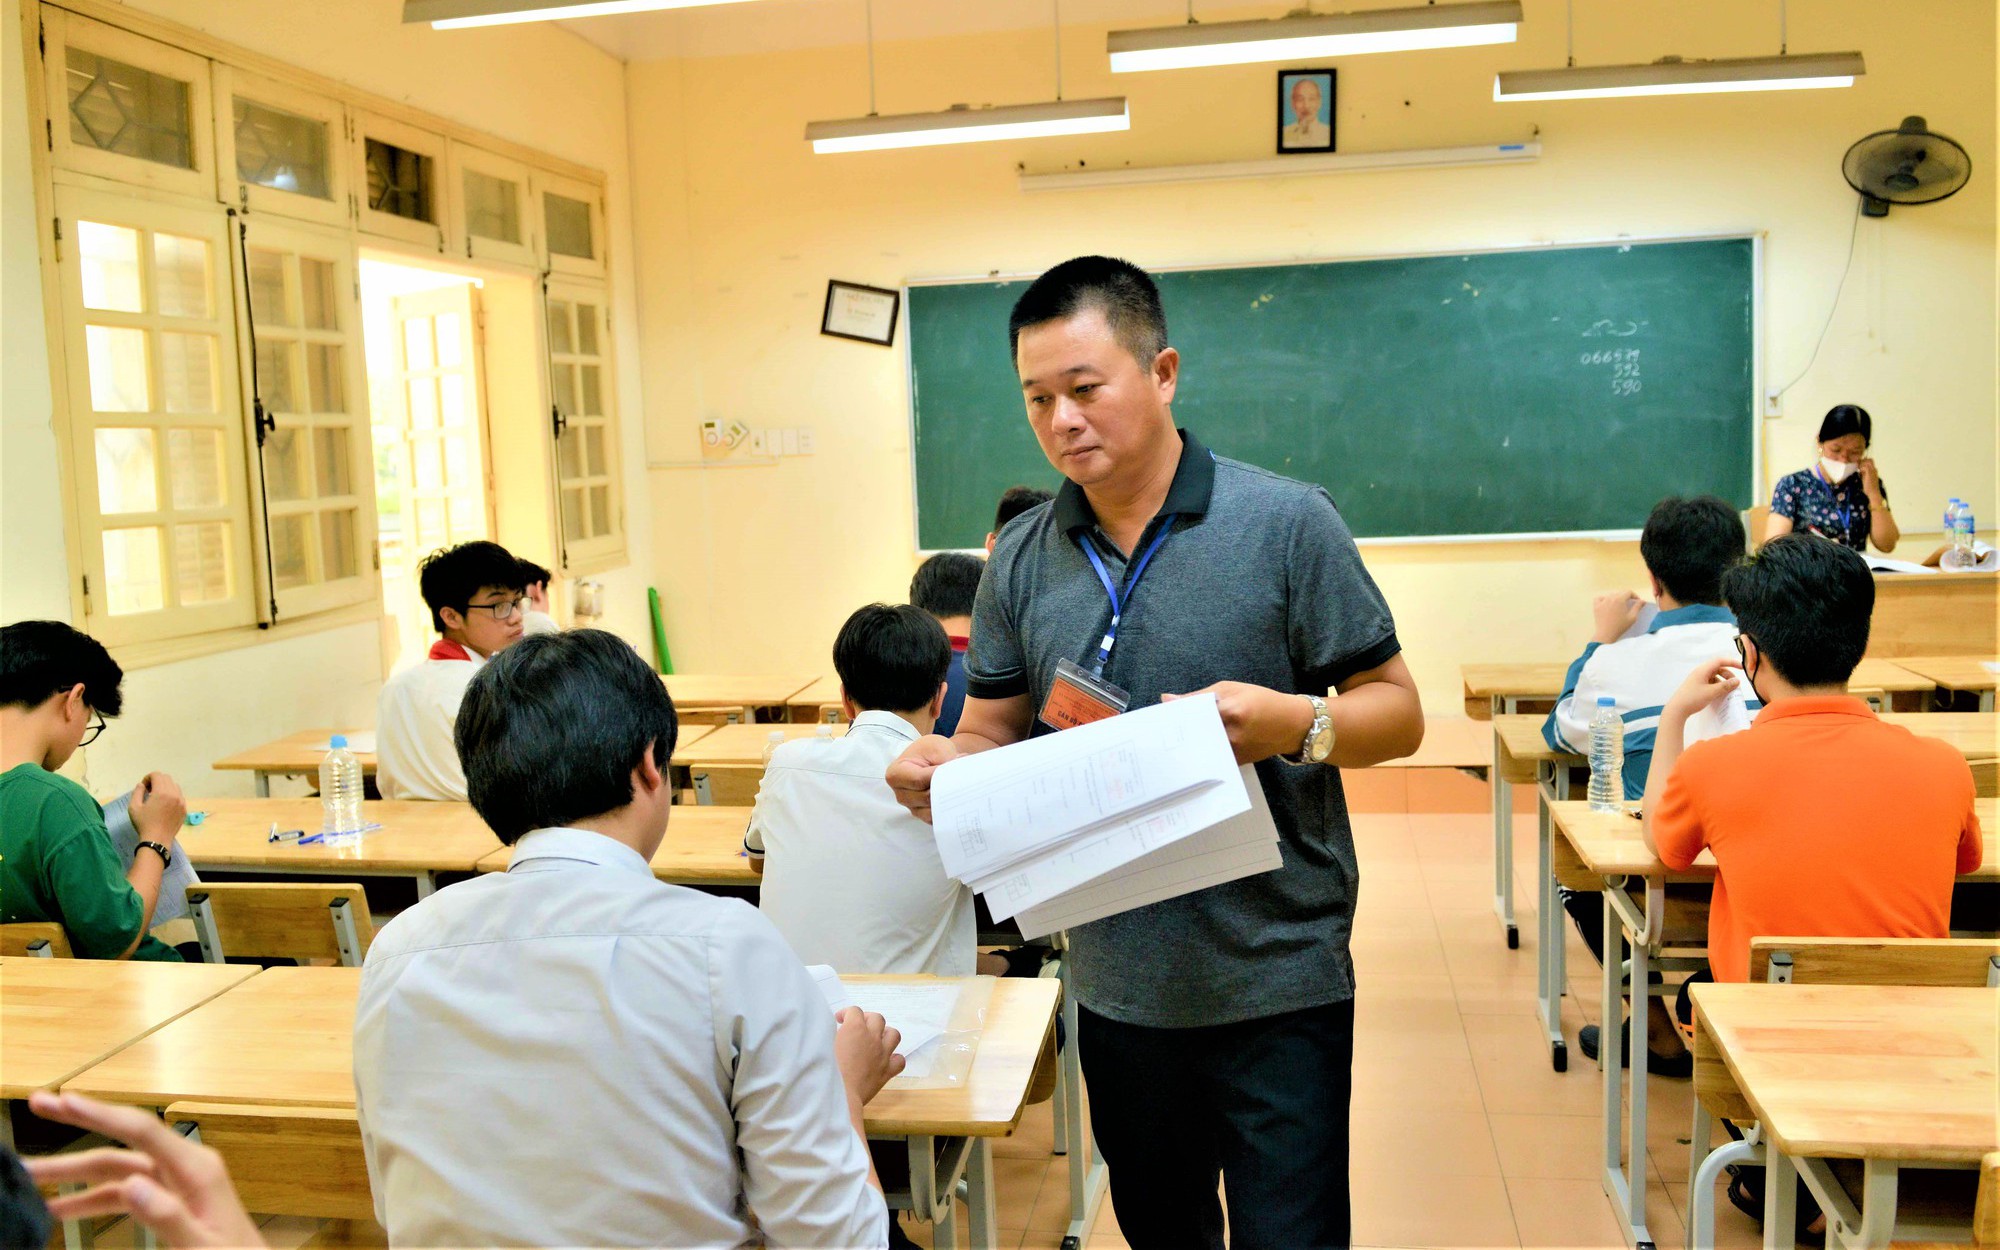 Thi lớp 10 tại Hà Nội: 5 thí sinh bị lập biên bản trong ngày thi đầu tiên